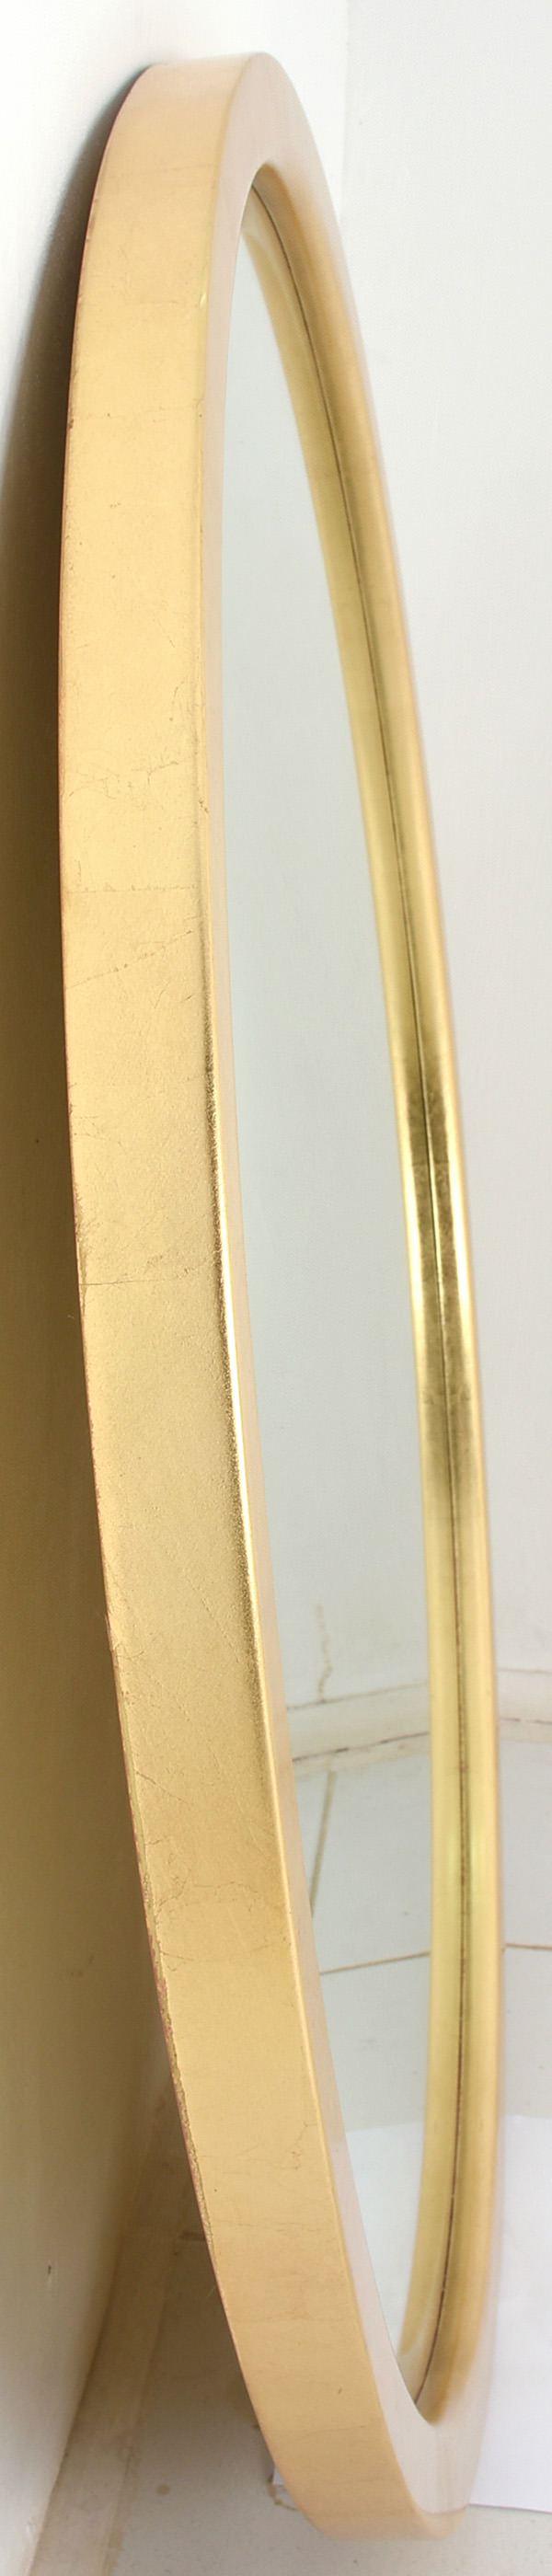 round mirror with golden leaf frame